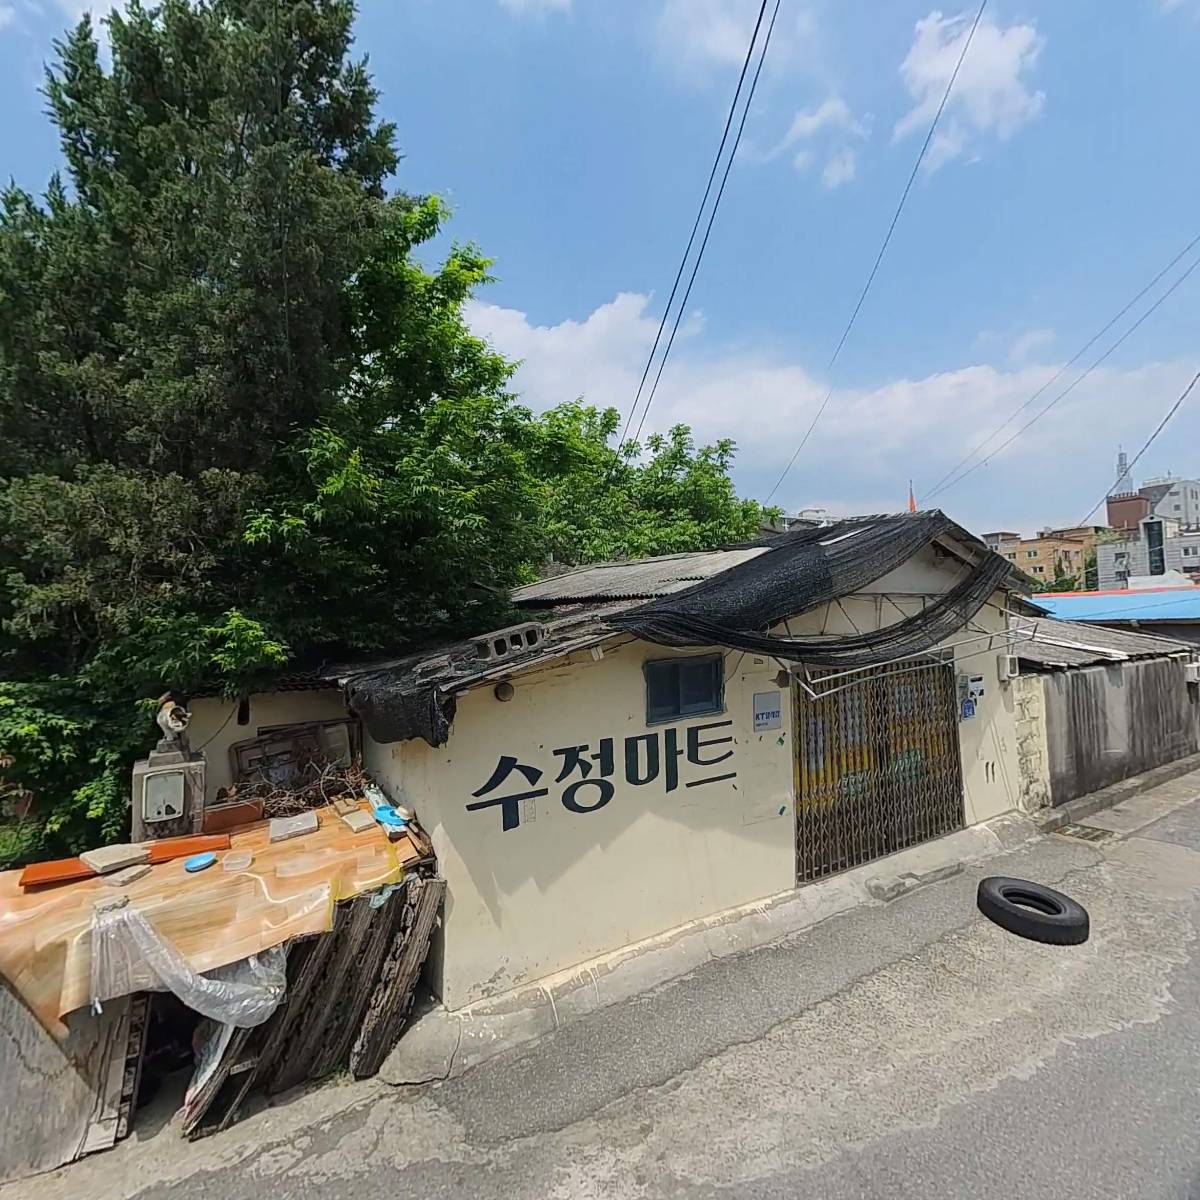 대전동산중학교